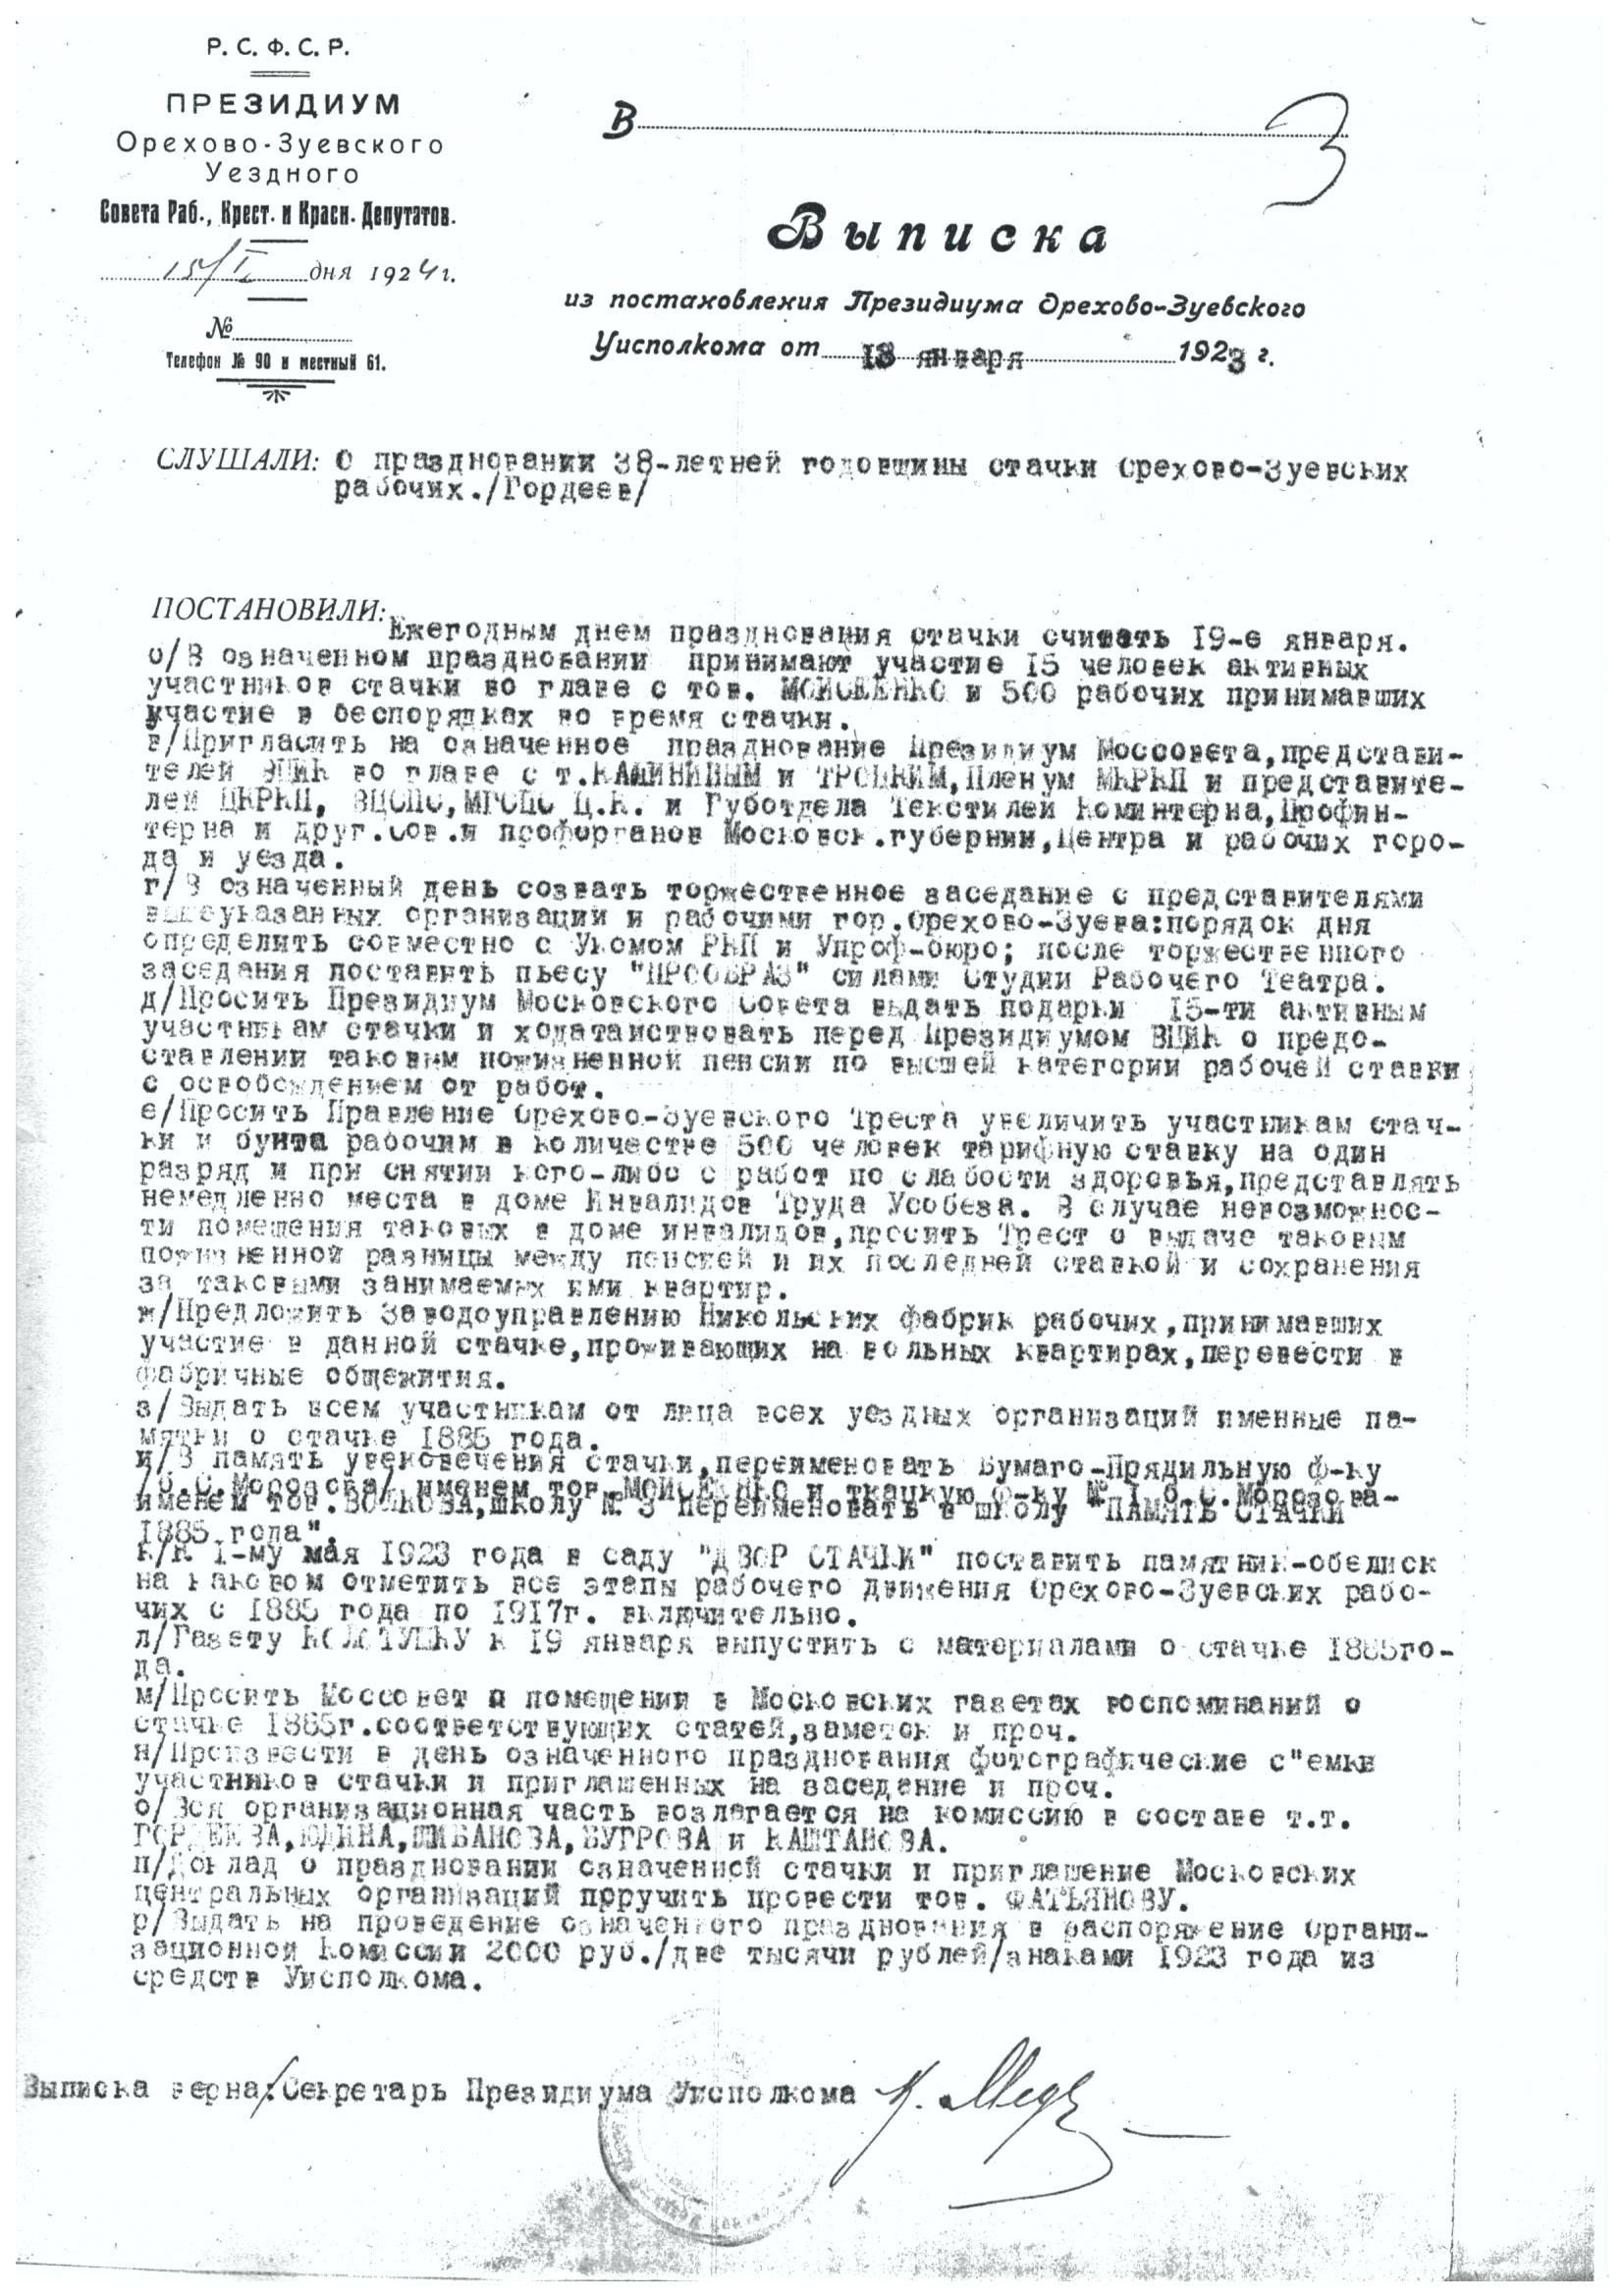 Выписка из Постановления Президиума Орехово-Зуевского Уисполкома от 13 января 1923 г.